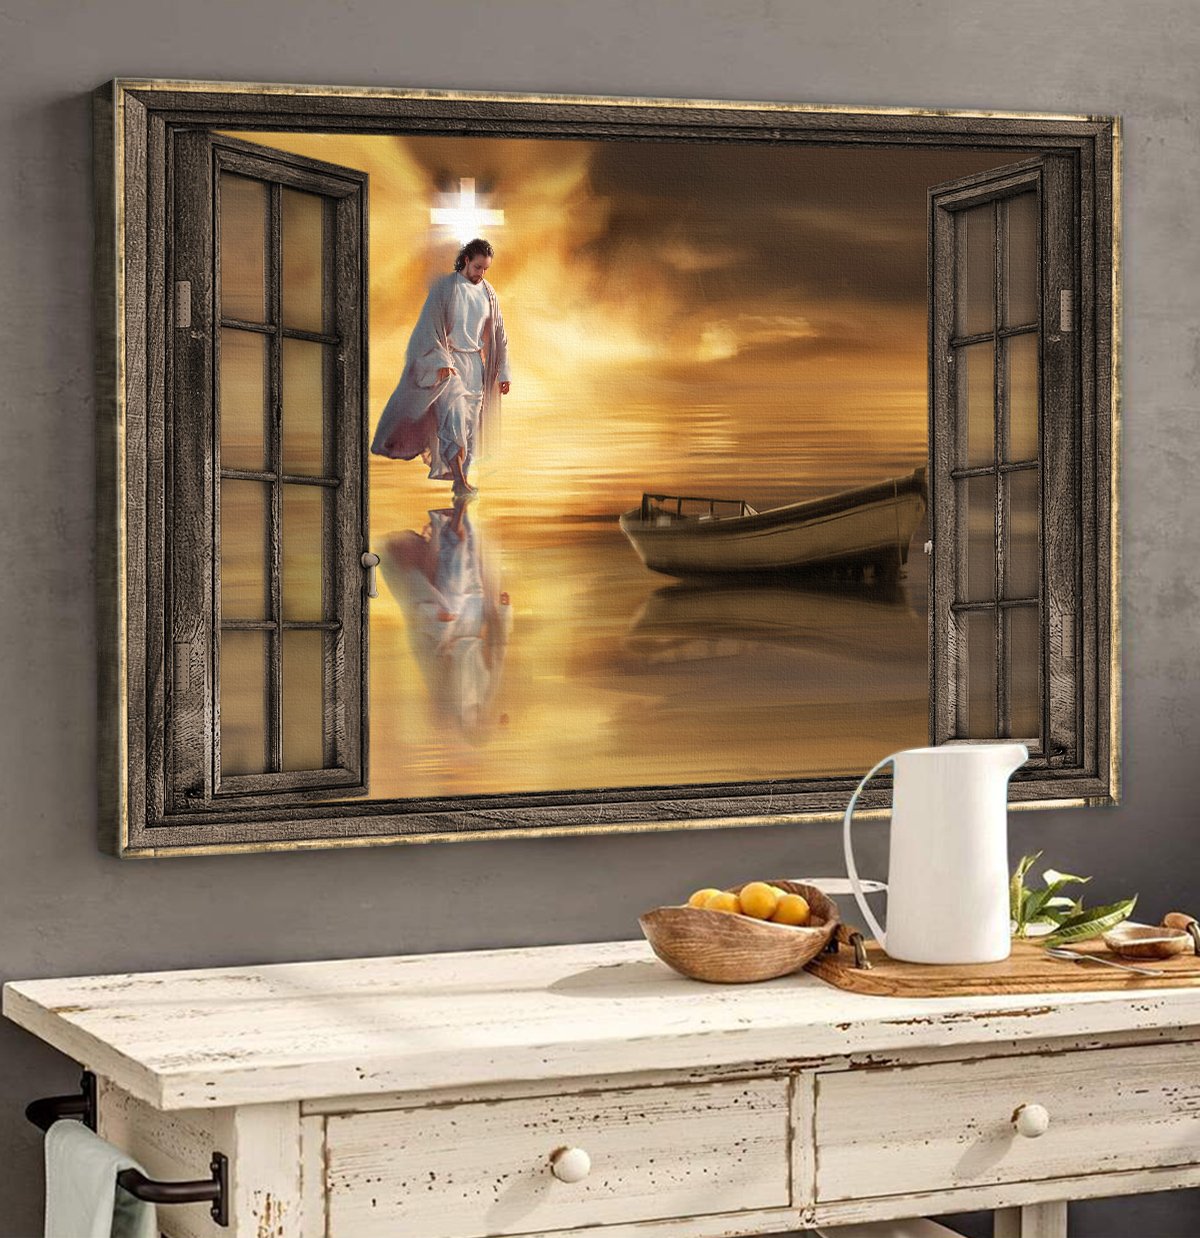 Jesus walks on water, Wooden window, Halo infinite - Jesus Landscape Canvas Prints, Wall Art